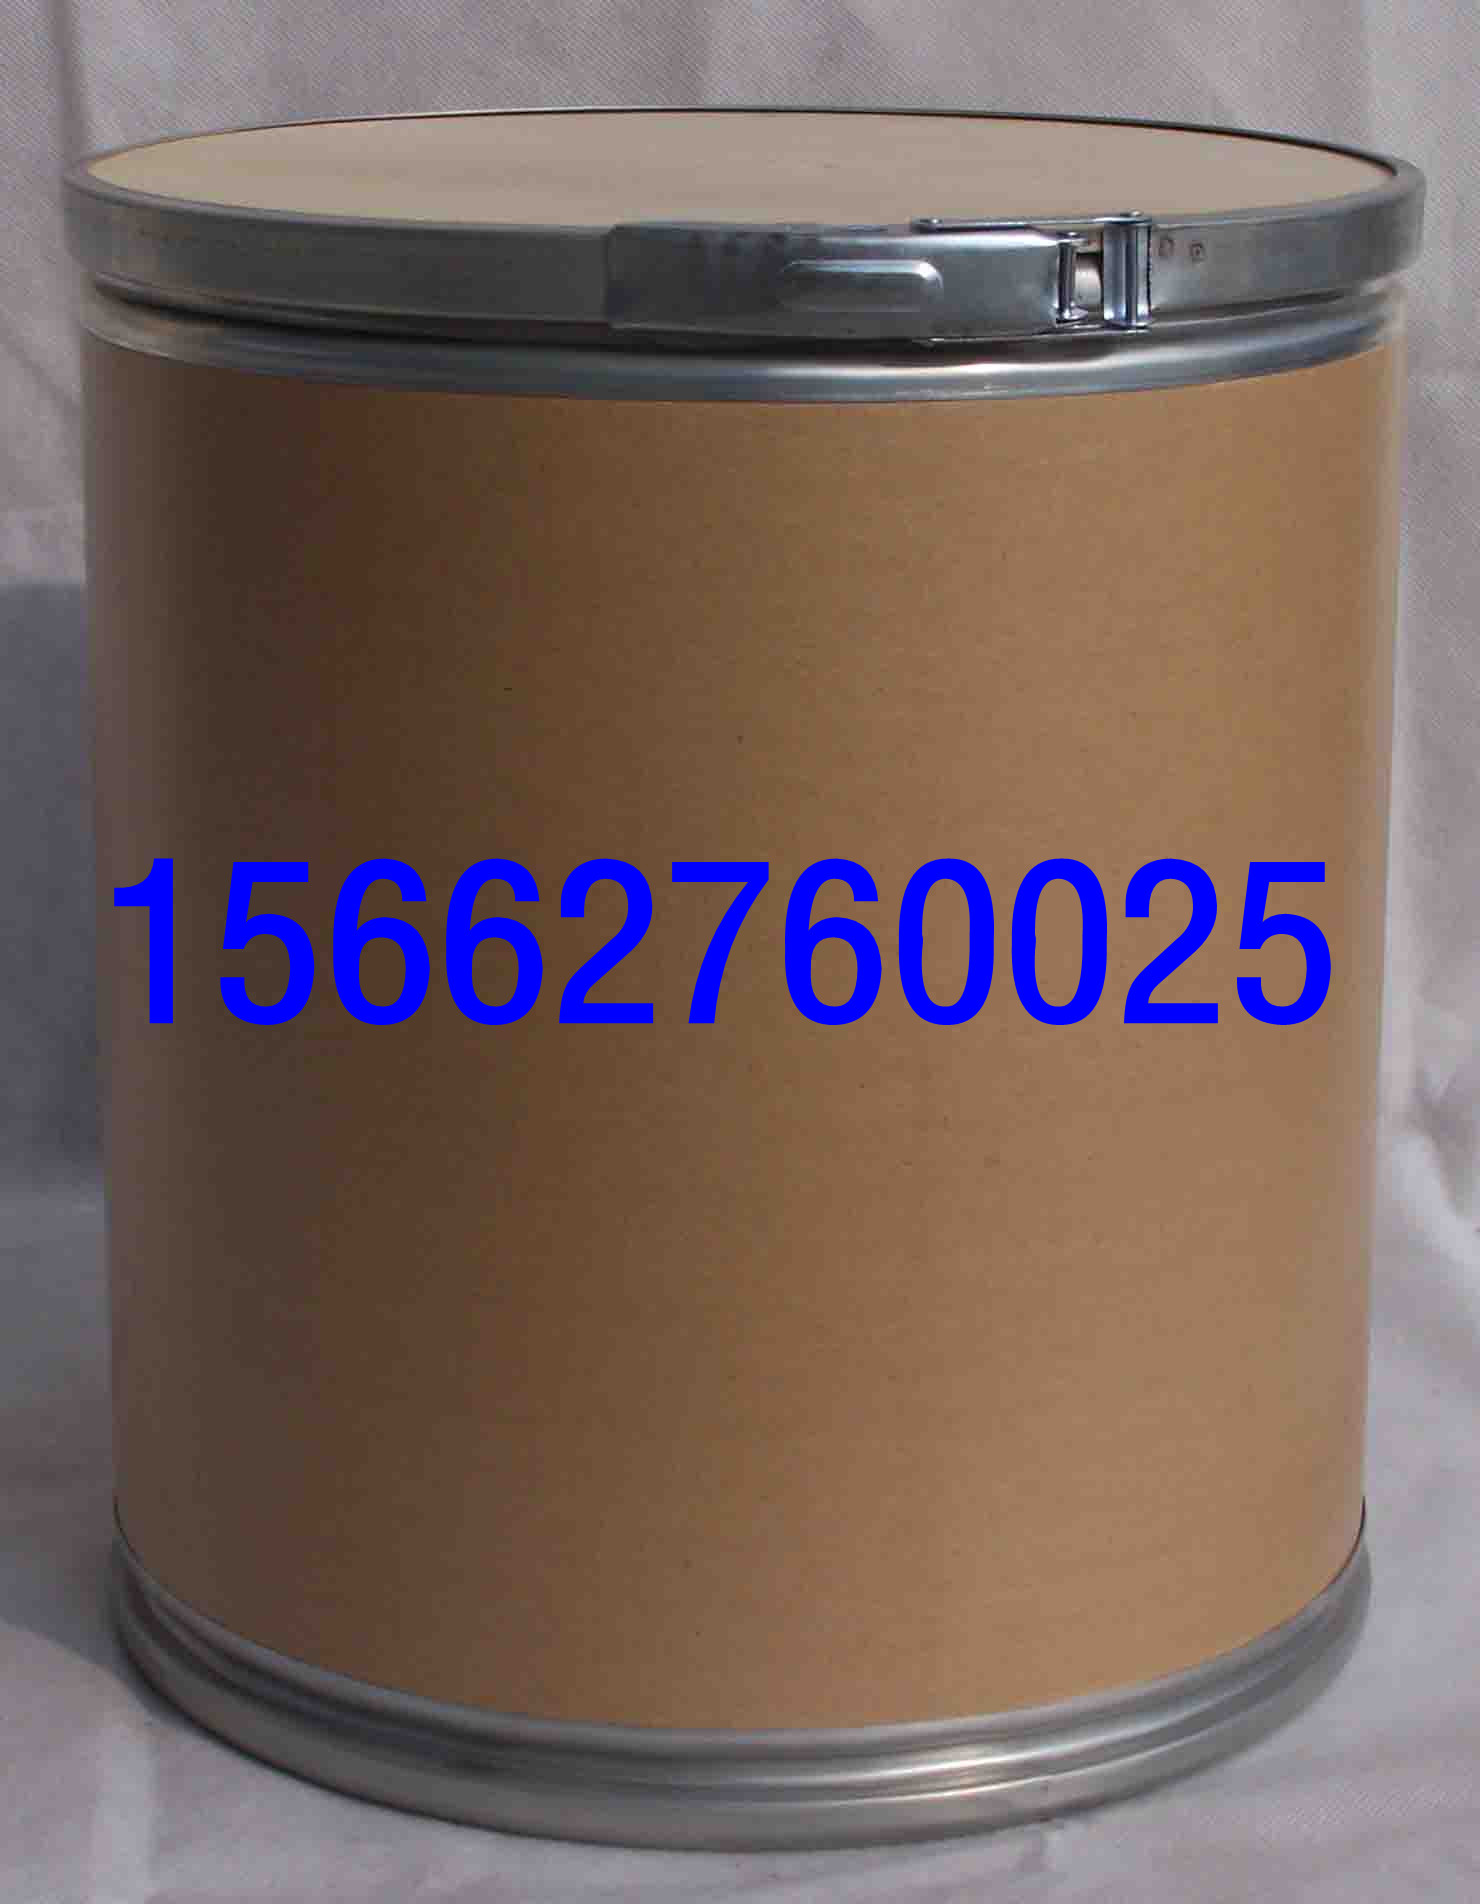 高碘酸钠生产厂家15662760025,Sodium periodate